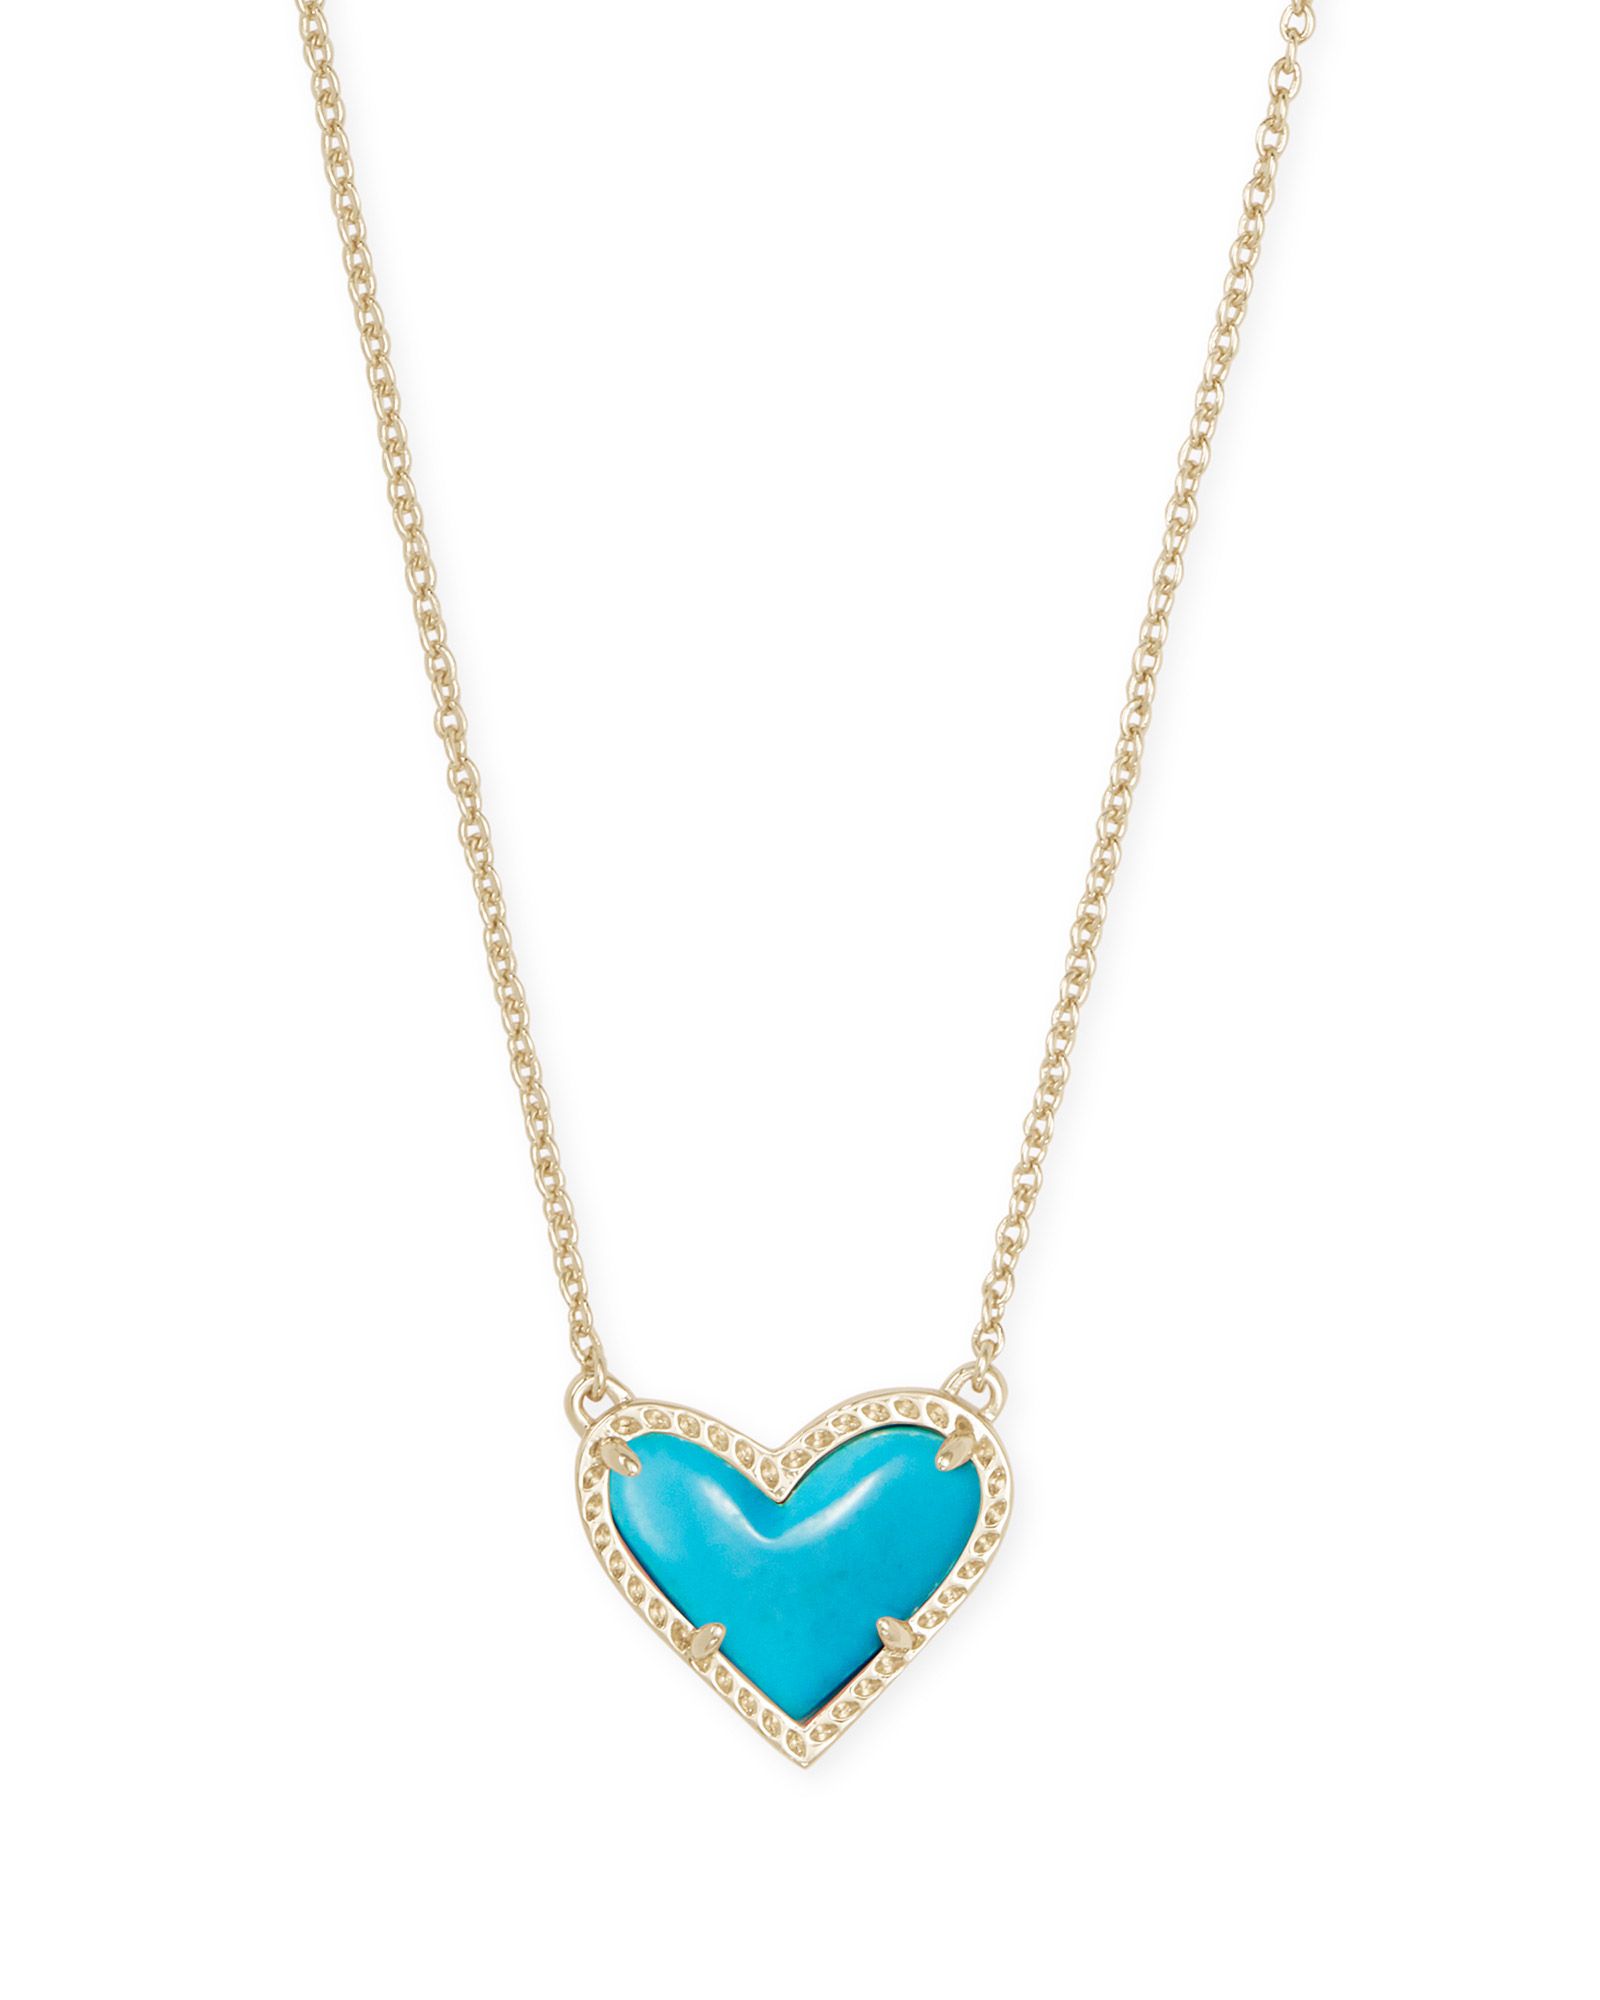 Ari Heart Gold Pendant Necklace in Turquoise Magnesite | Kendra Scott